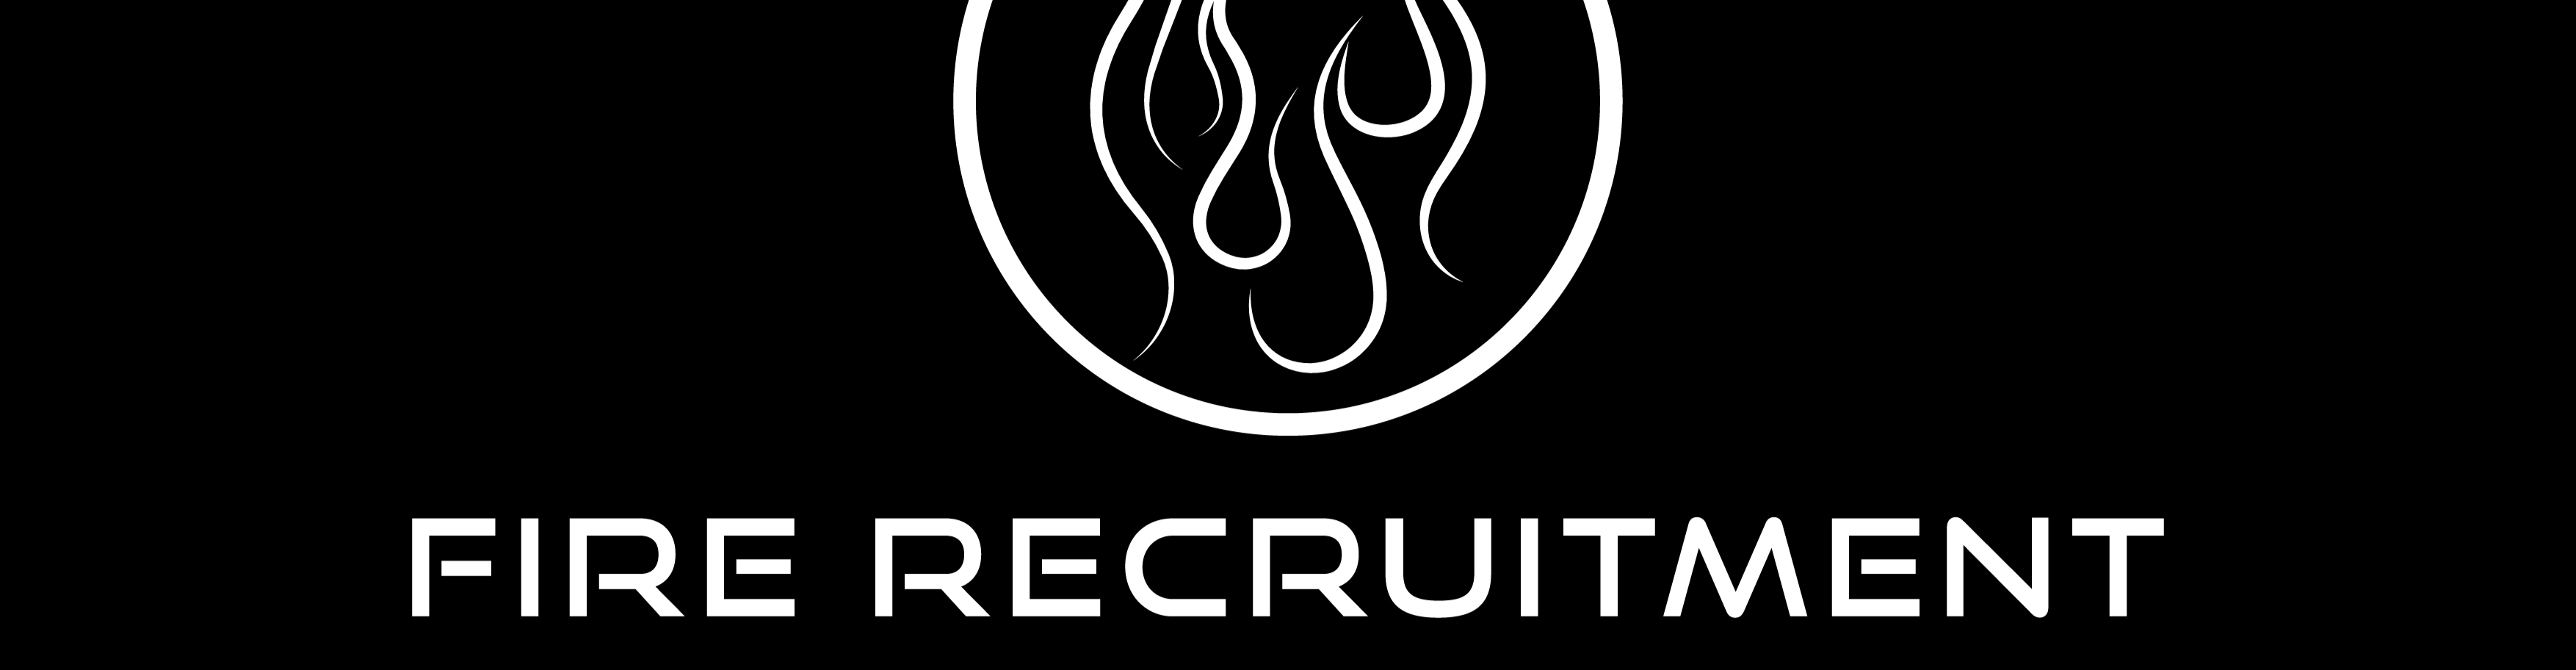 Fire Recruitment banner